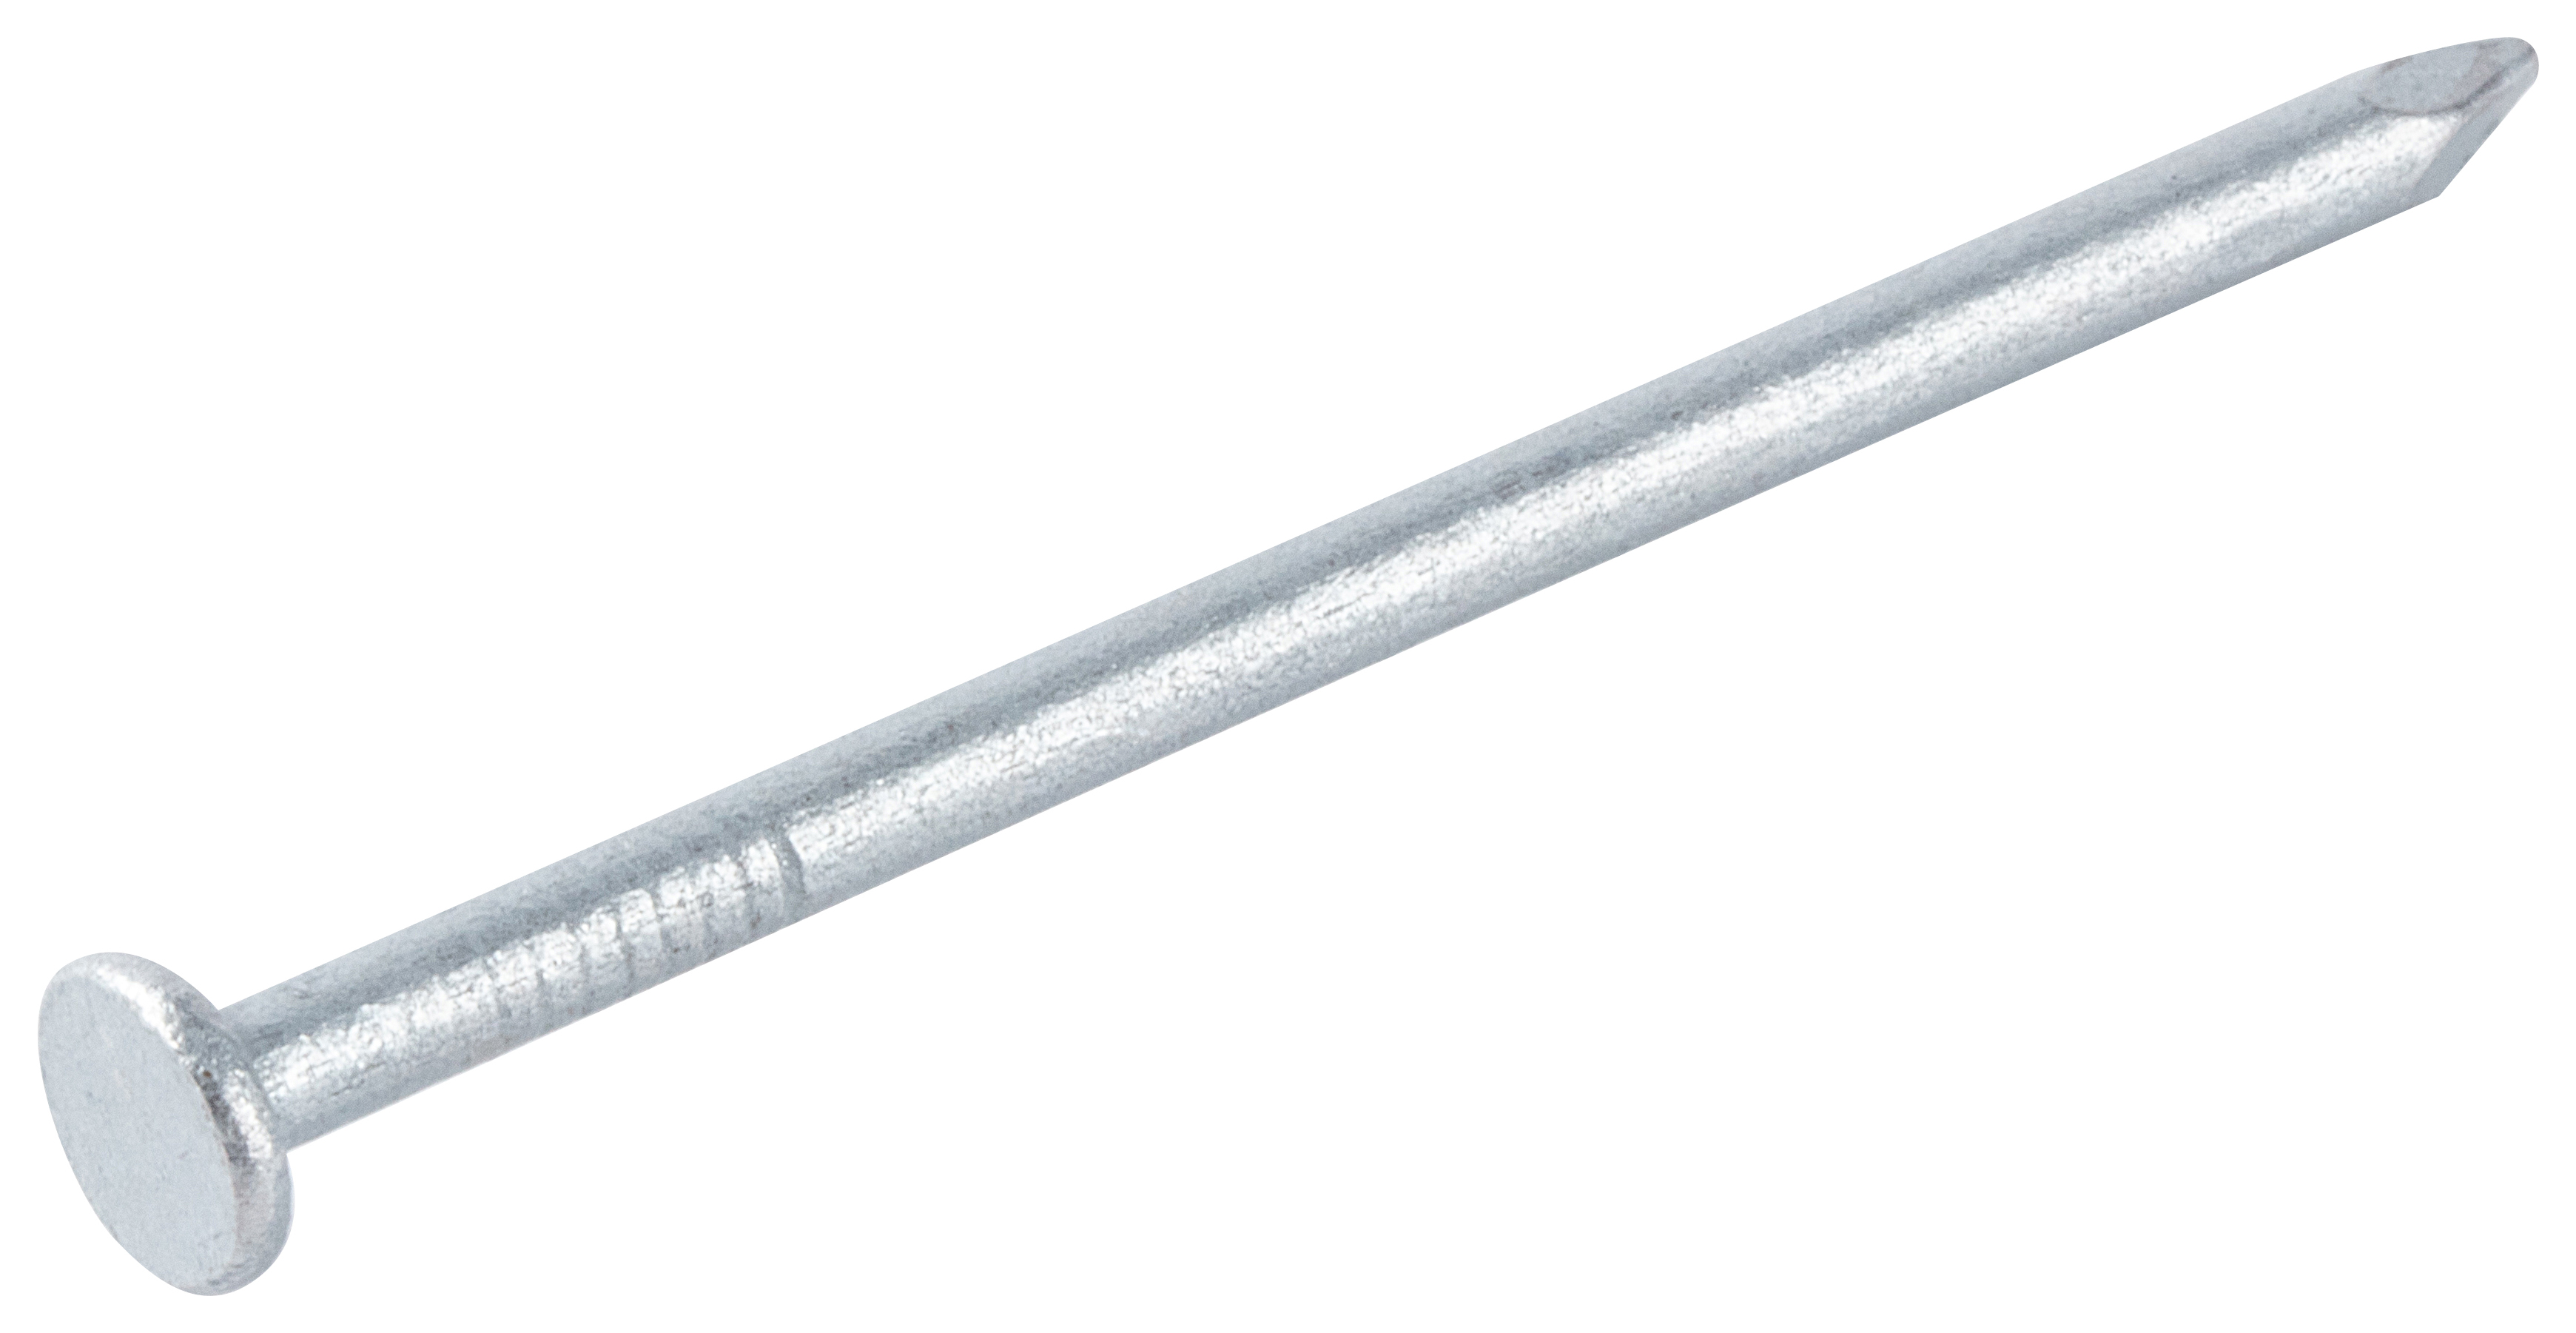 Galvanised Round Wire Nails - 50 x 2.65mm - 500g